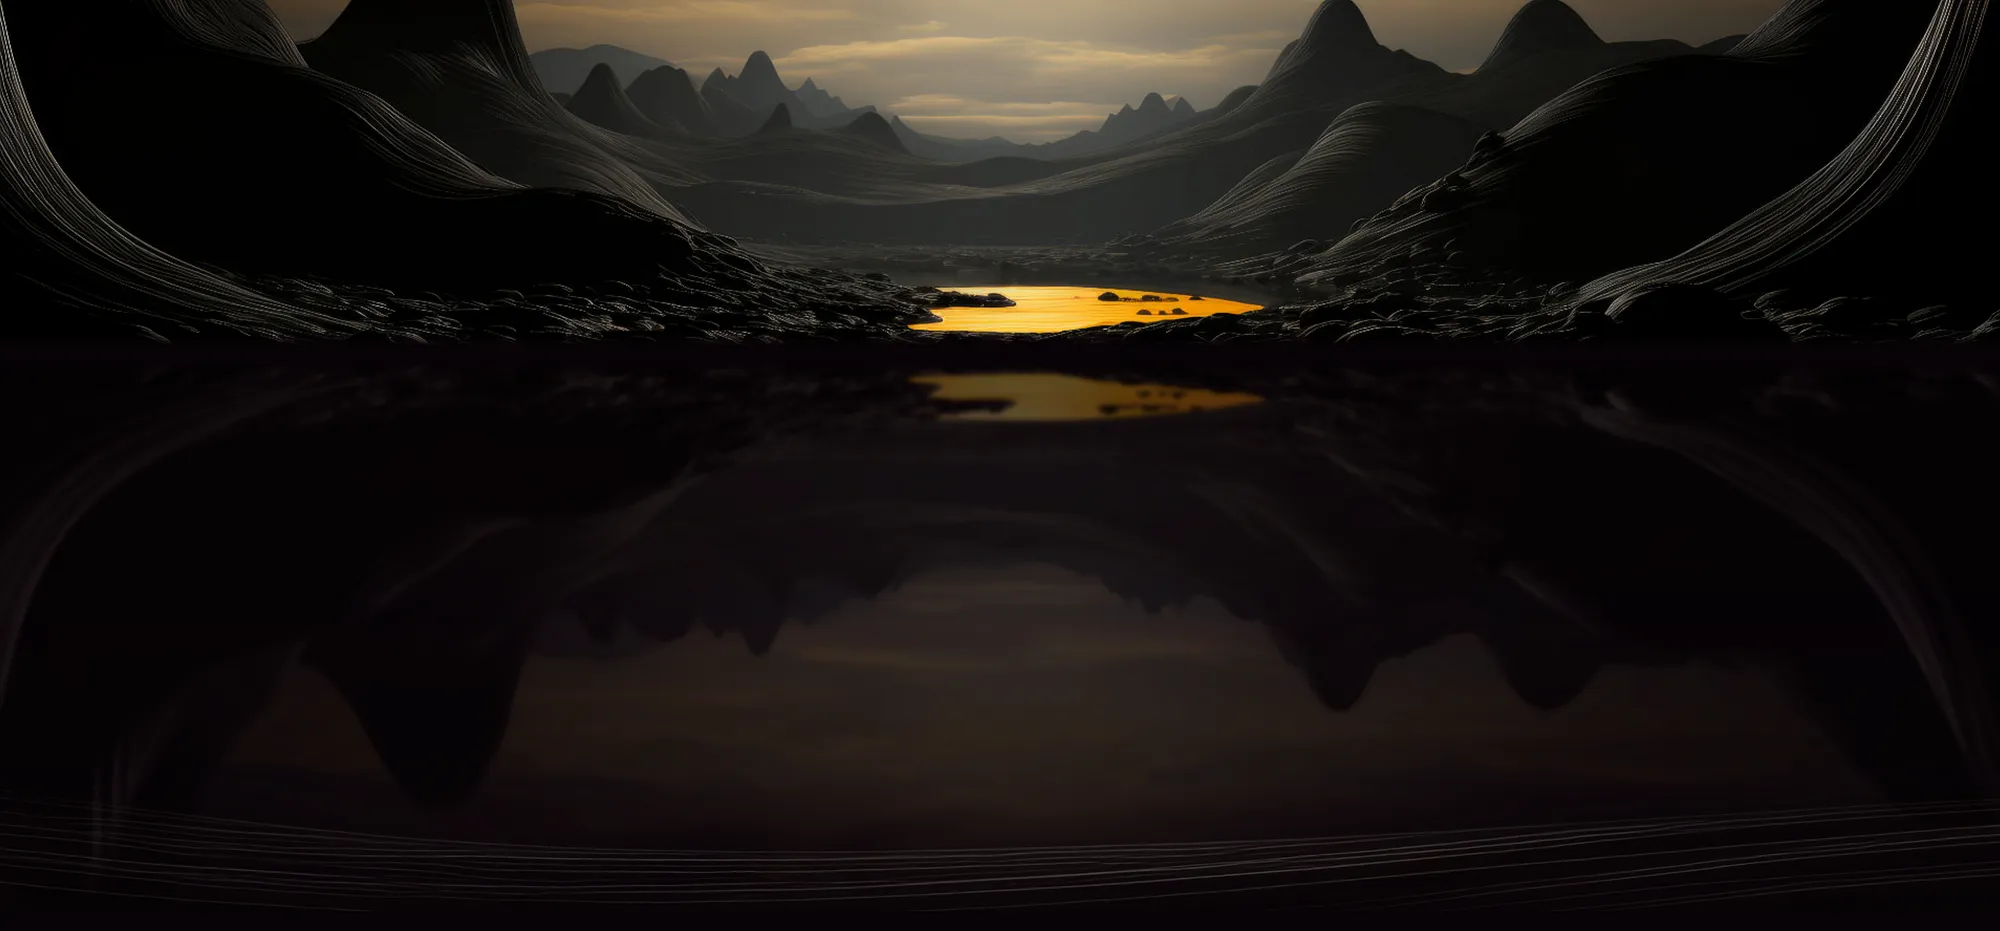 Использование эффекта отражения для создания иллюзии озера